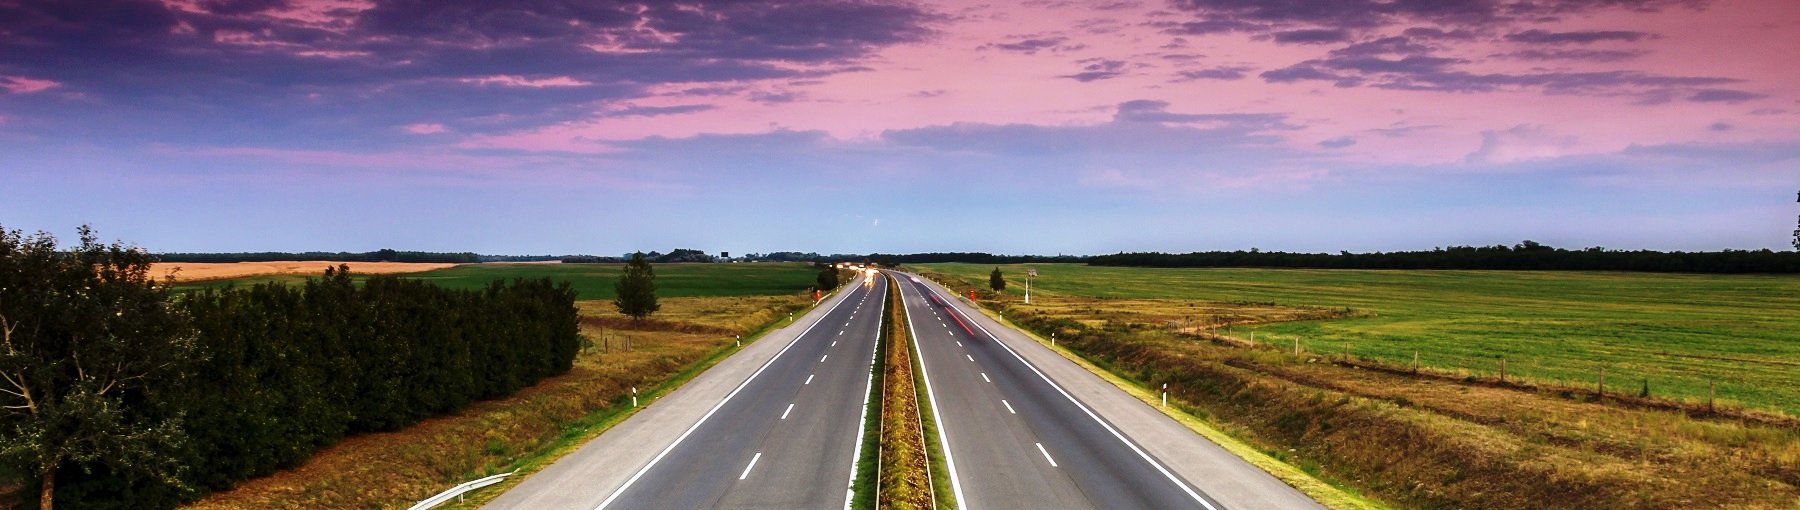 Via Baltica to fragment drogi międzynarodowej E67, który częściowo realizowany jest jako droga ekspresowa z Polski do Estonii, przez Litwę i Łotwę. Fot. Fesus Robert/Shutterstock